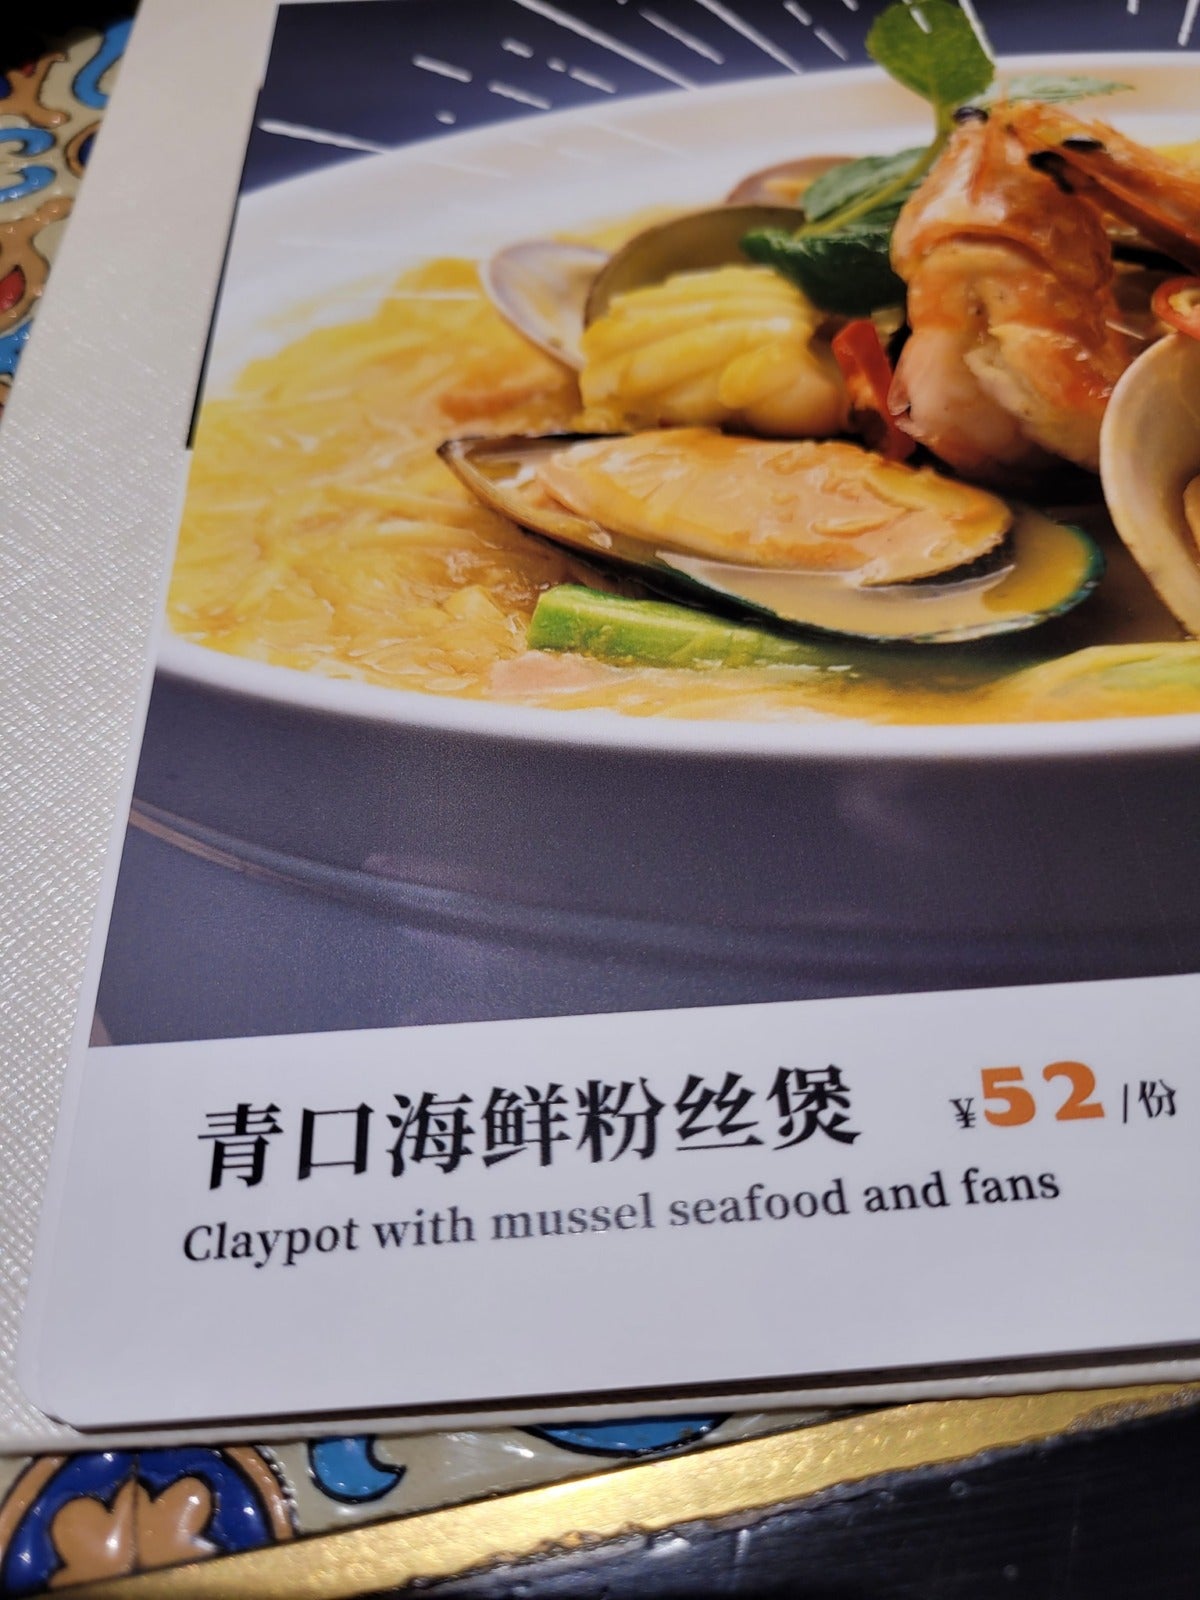 Restaurant In China Typo Translation